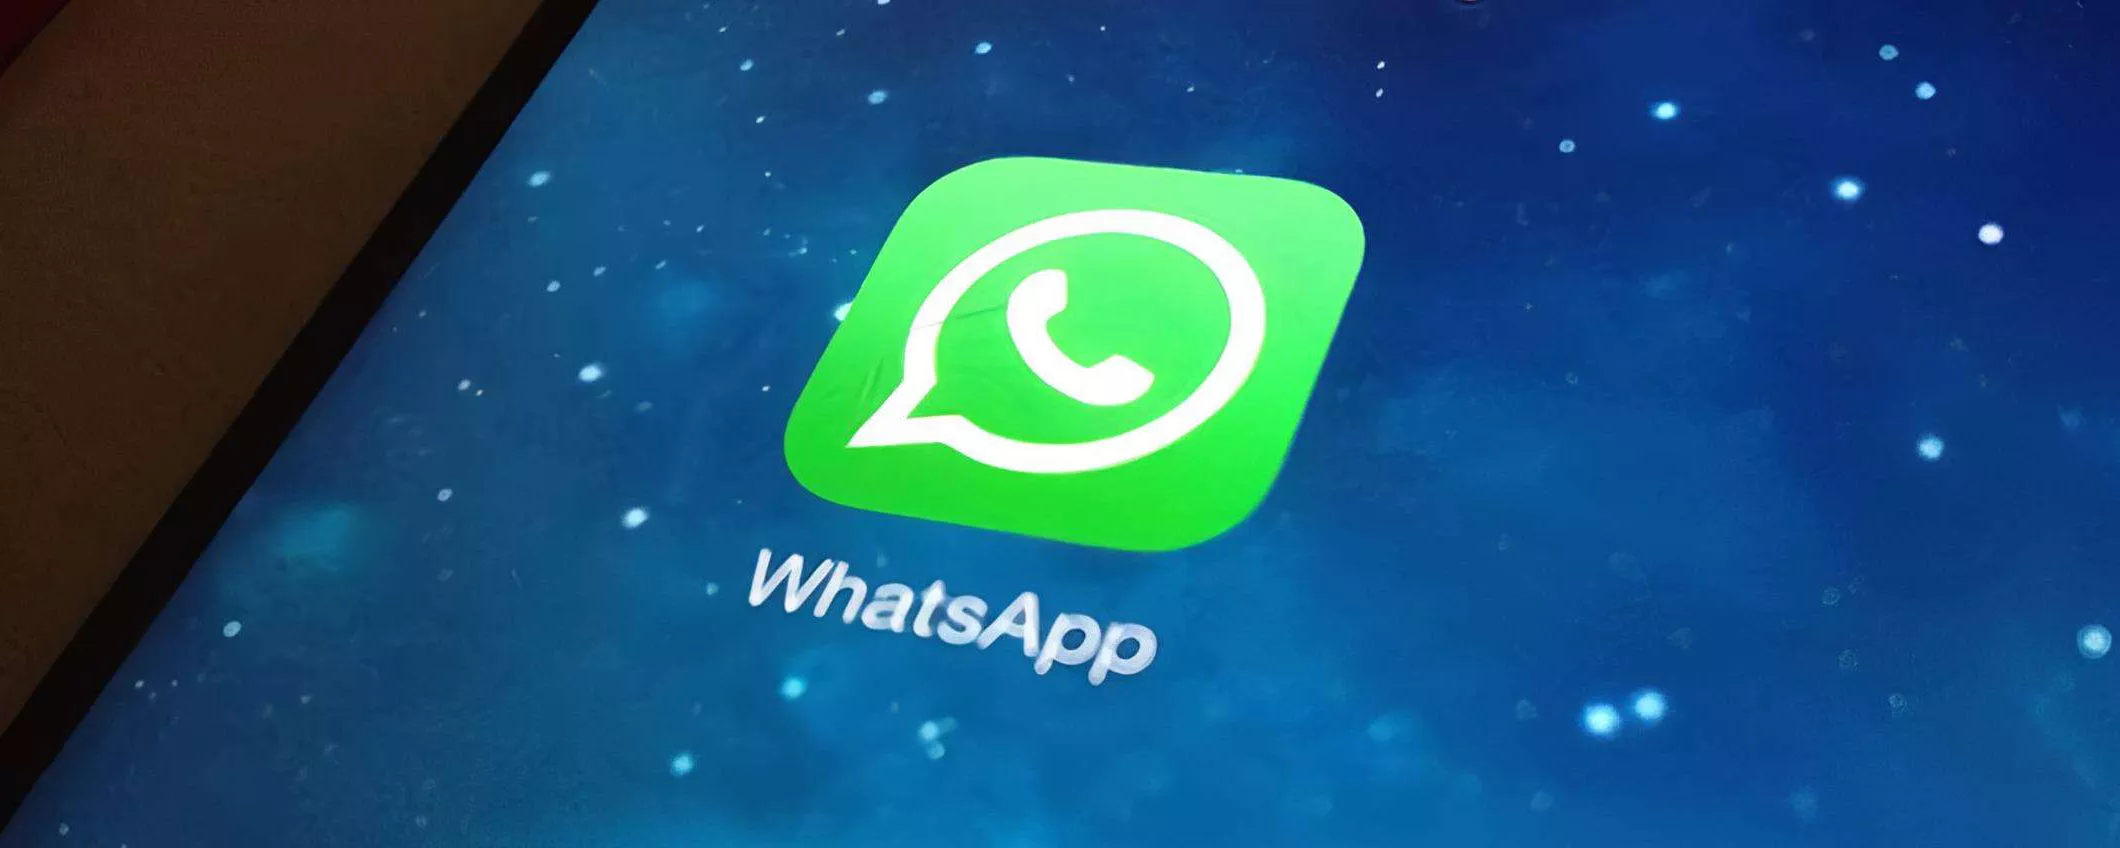 WhatsApp per iPad: l'attesa è finita, puoi provare la beta già da ora